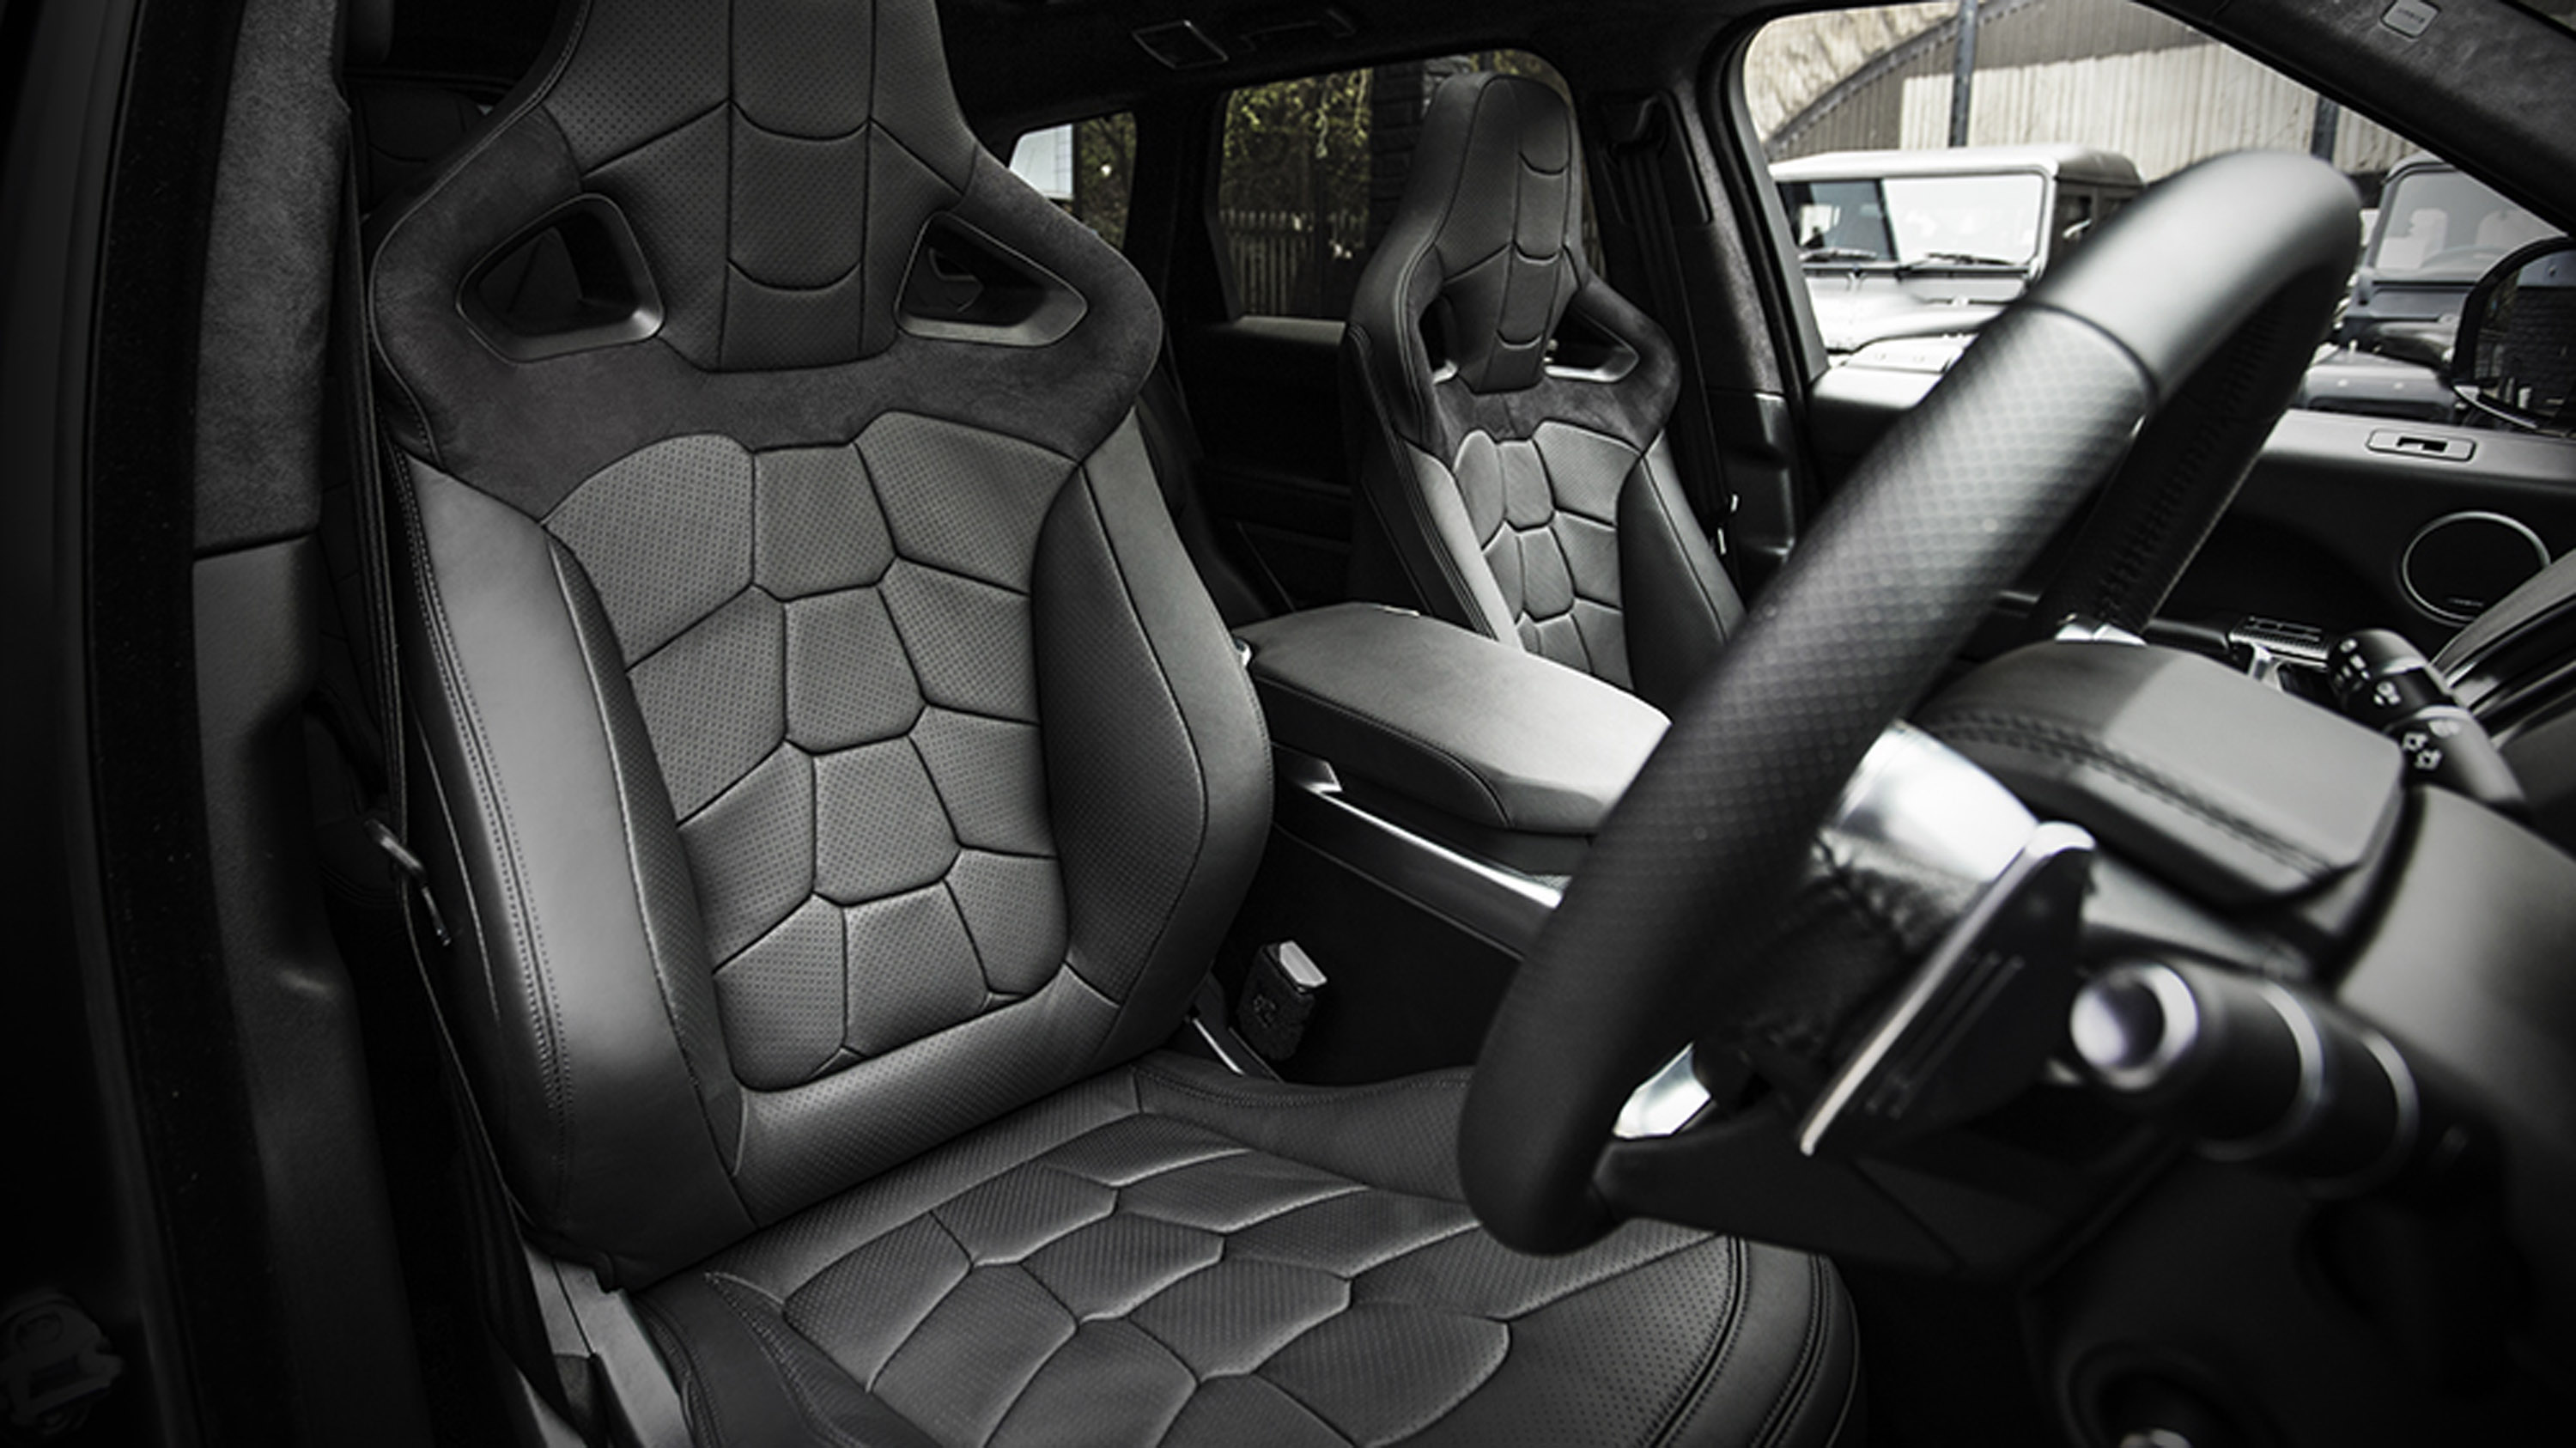 Наиболее заметные изменения сделаны с кузовом: команда Kahn Design добавила аккуратные детали из ABS пластика, агрессивный передний сплиттер, расширенные колесные арки и аккуратные эксклюзивные 23-дюймовые диски Kahn RS.